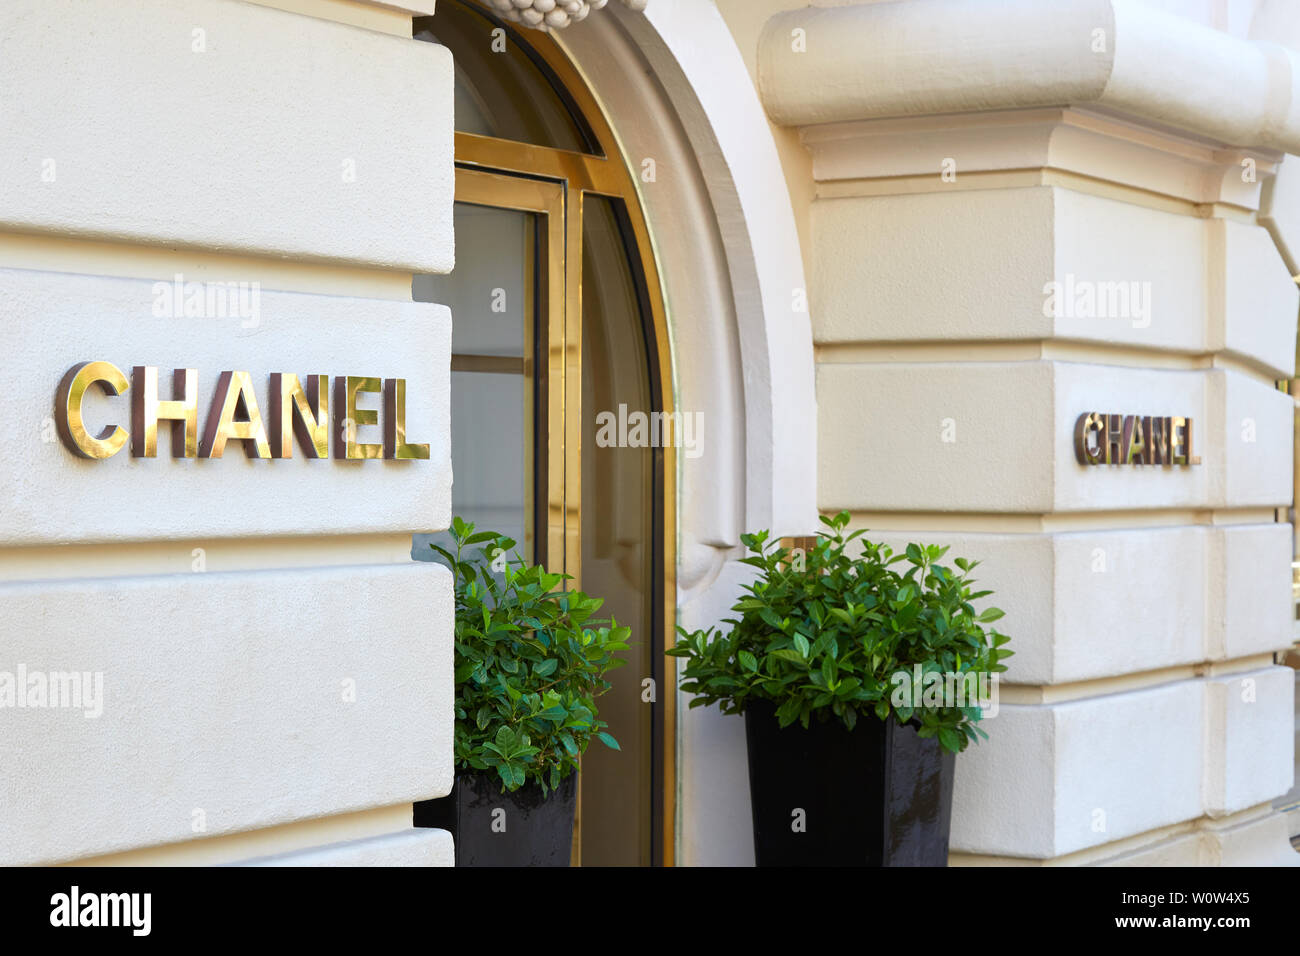 MONTE CARLO, MONACO - 21. AUGUST 2016: Chanel Mode und Schmuck luxus Shop Eingang mit goldenem Zeichen in Monte Carlo, Monaco. Stockfoto